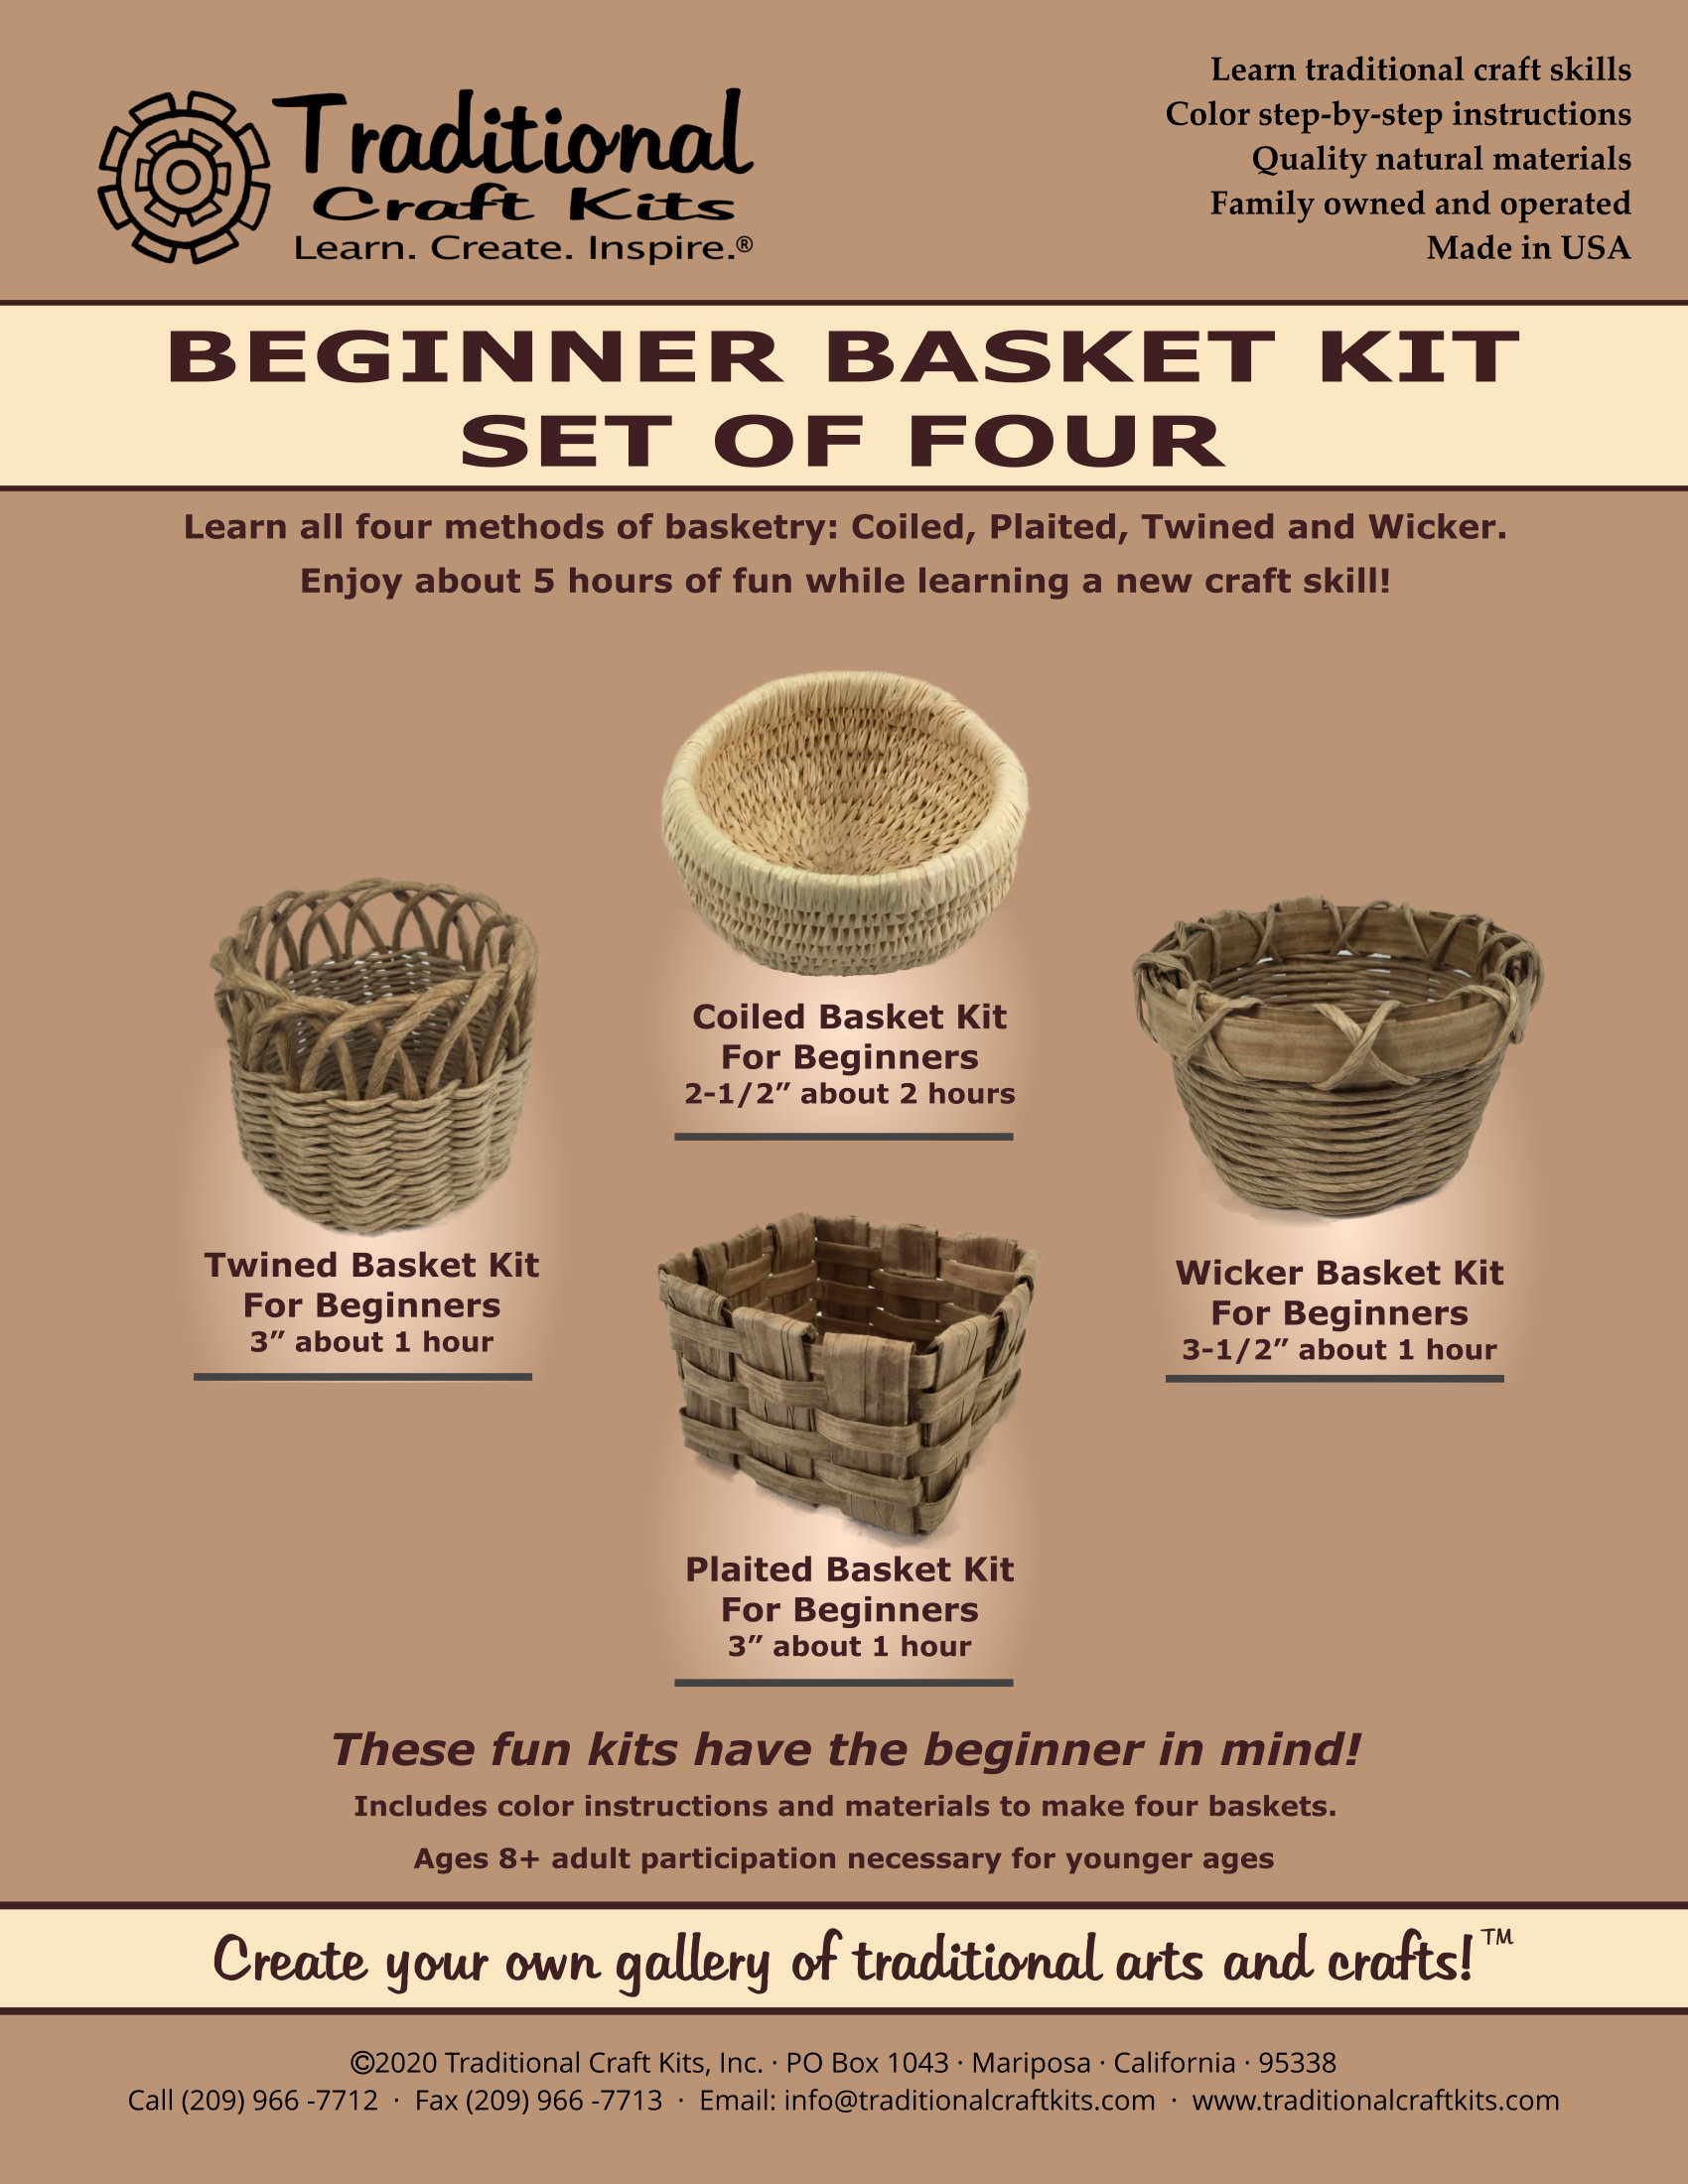 New in Package EZ Basketree Nut/Salsa/Cookie Basket Making Weaving Kit  w/Handle